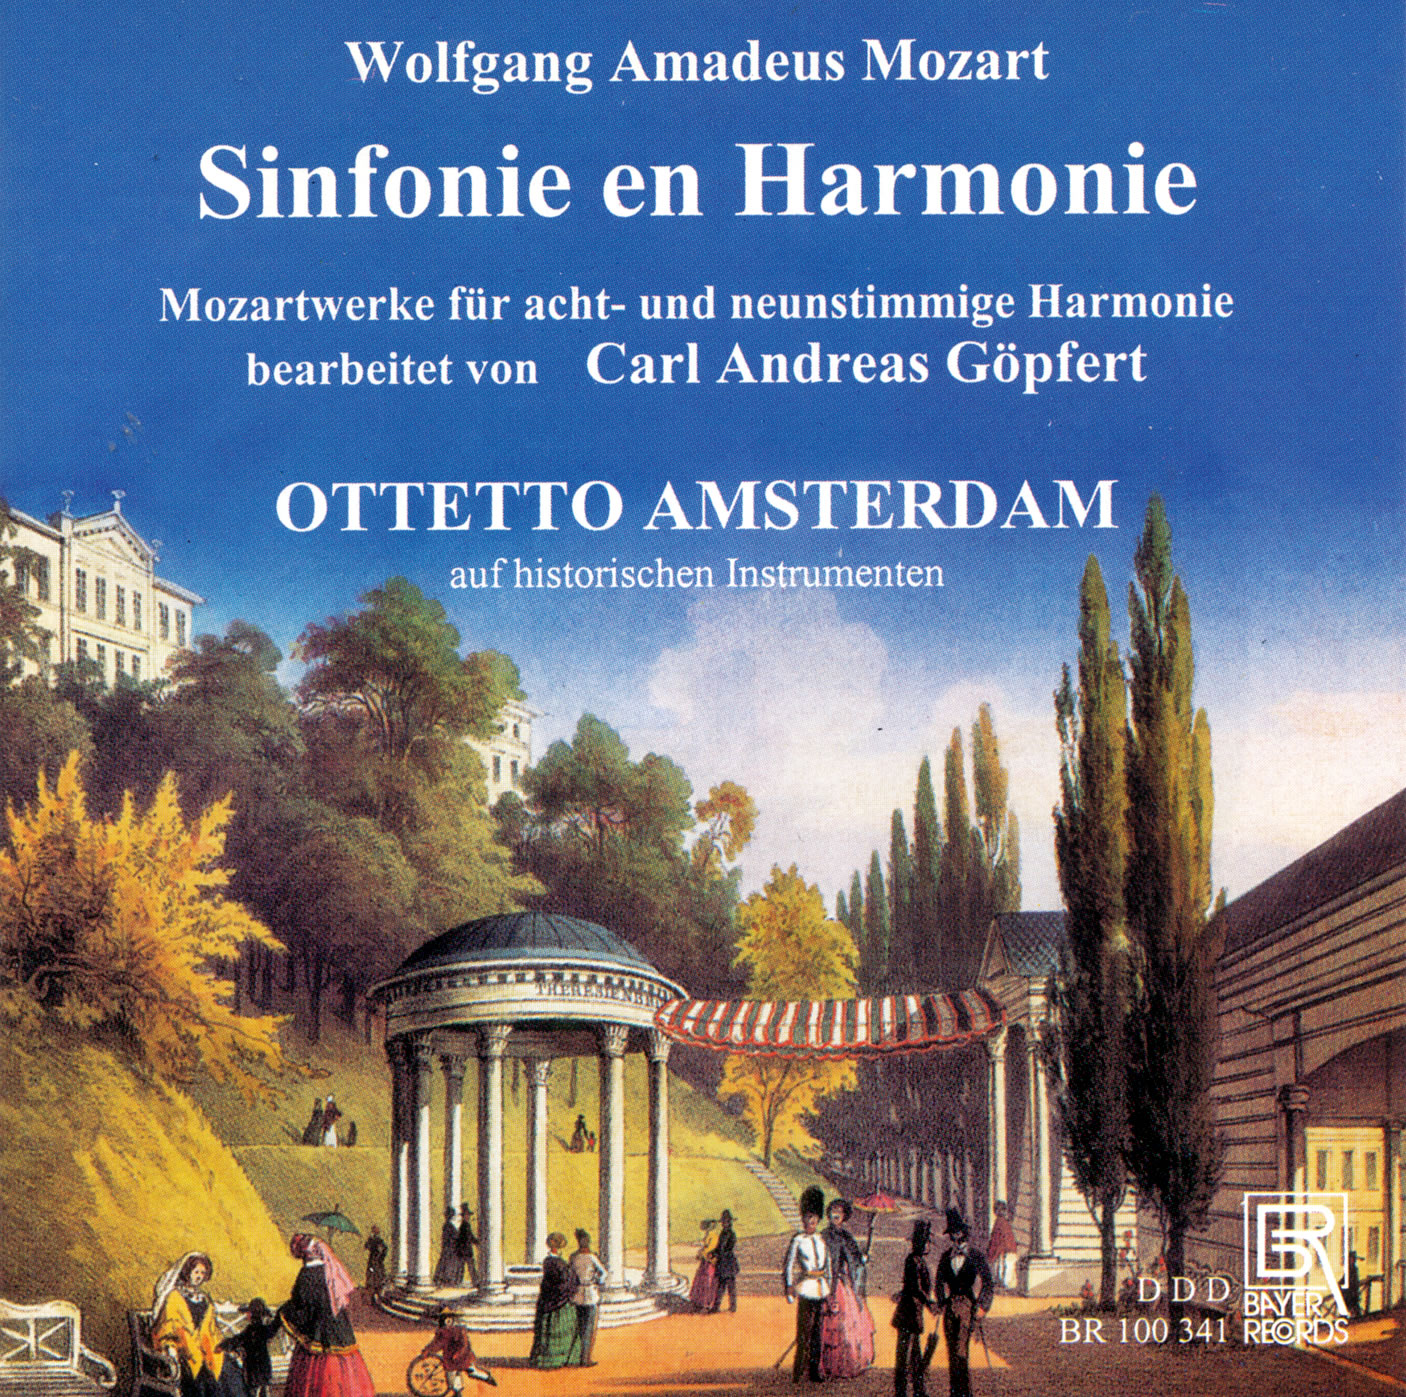 Wolfgang Amadeus Mozart - Sinfonie en Harmonie